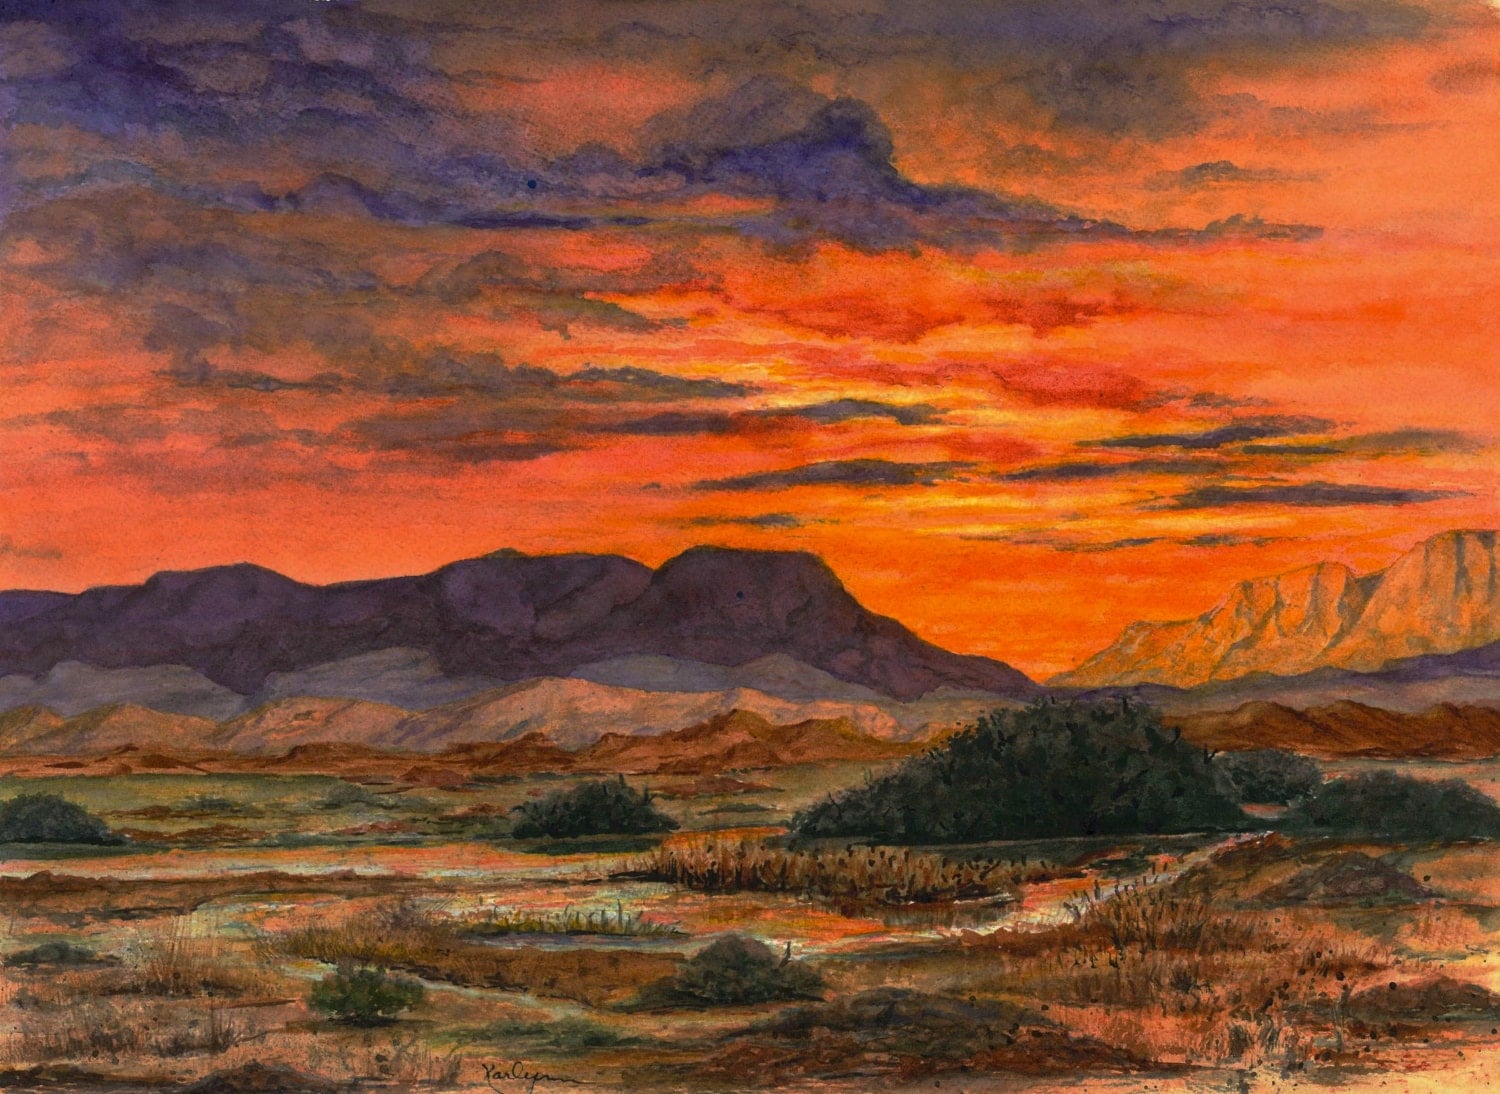 Desert Sunset Southwest Landscape Painting Print From